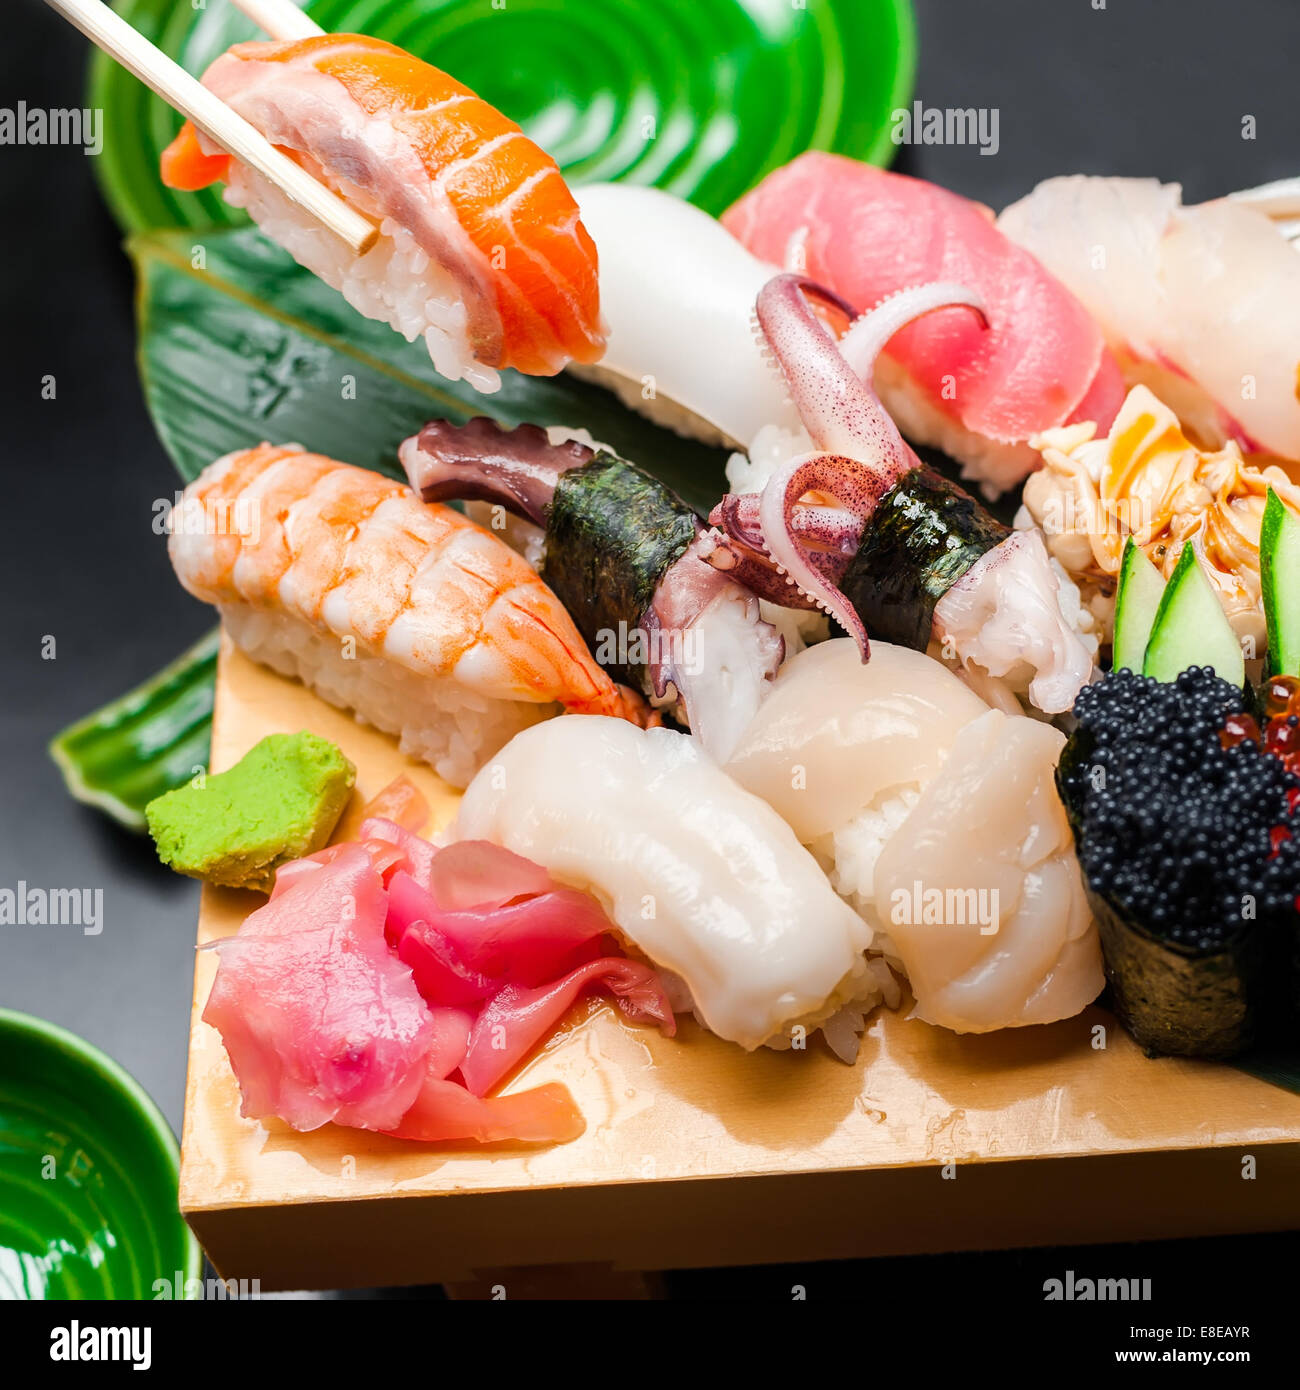 Premium-Qualität-Sushi-Rollen im japanischen Restaurant serviert. Asiatische Küche-Hintergrund Stockfoto